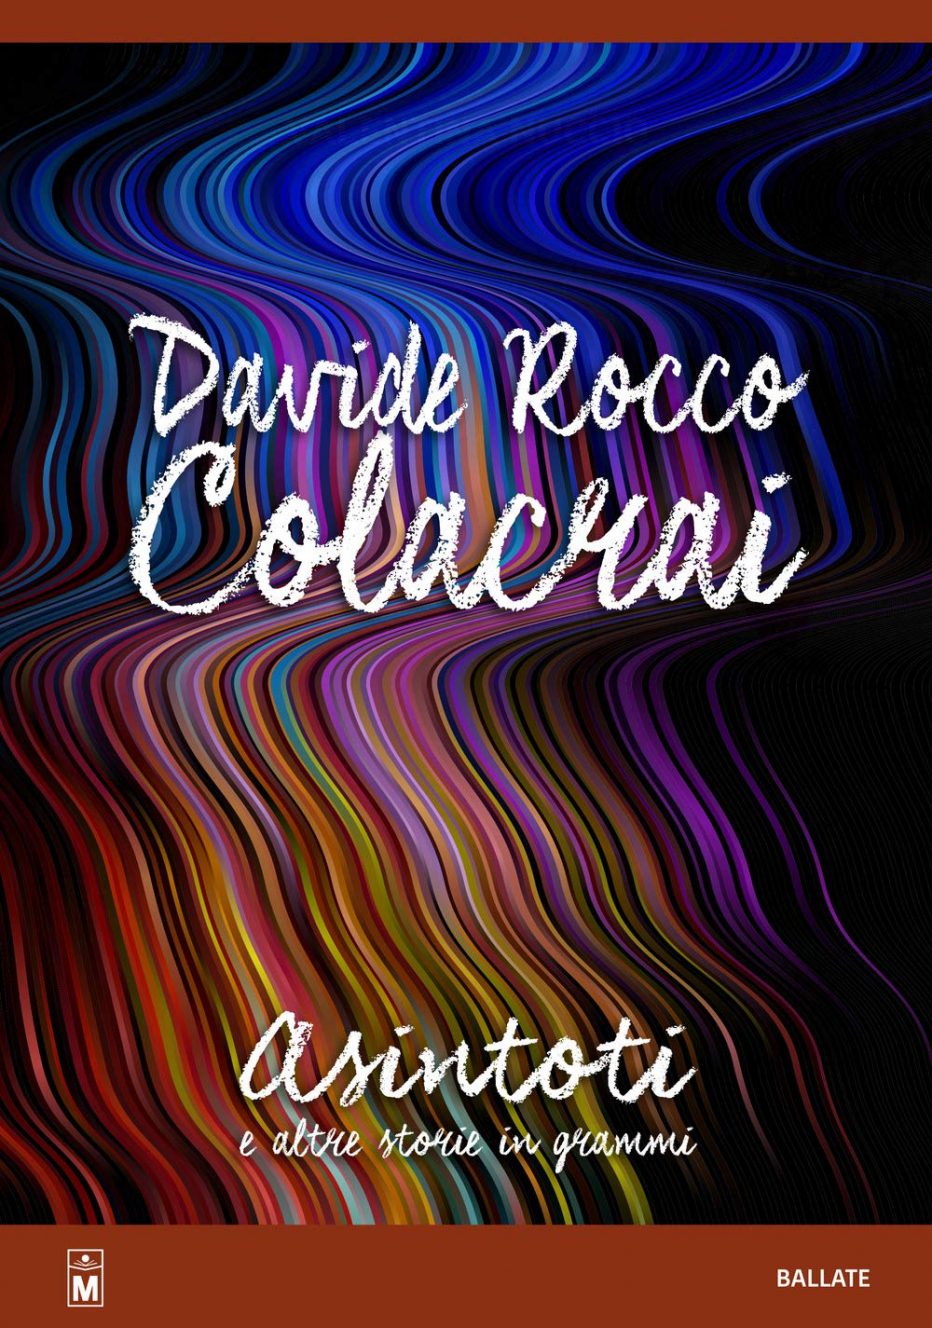 Davide Rocco Colacrai, è nato un grande poeta